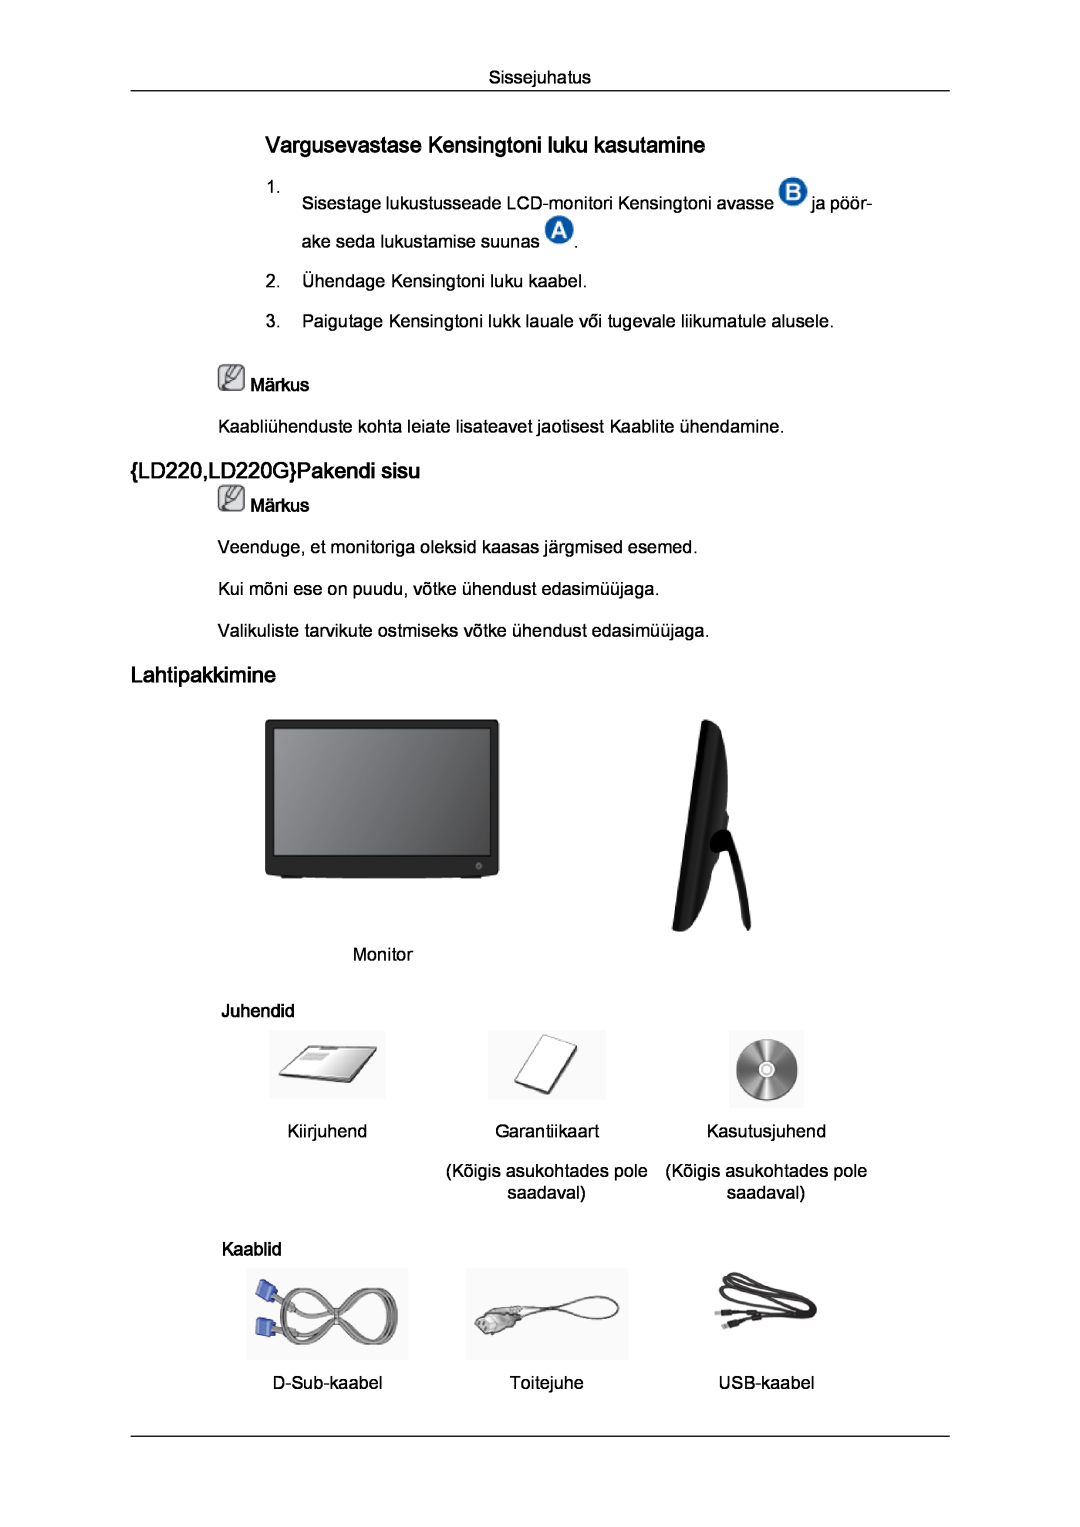 Samsung LS22LFUGFY/EN manual Vargusevastase Kensingtoni luku kasutamine, LD220,LD220GPakendi sisu, Lahtipakkimine, Märkus 